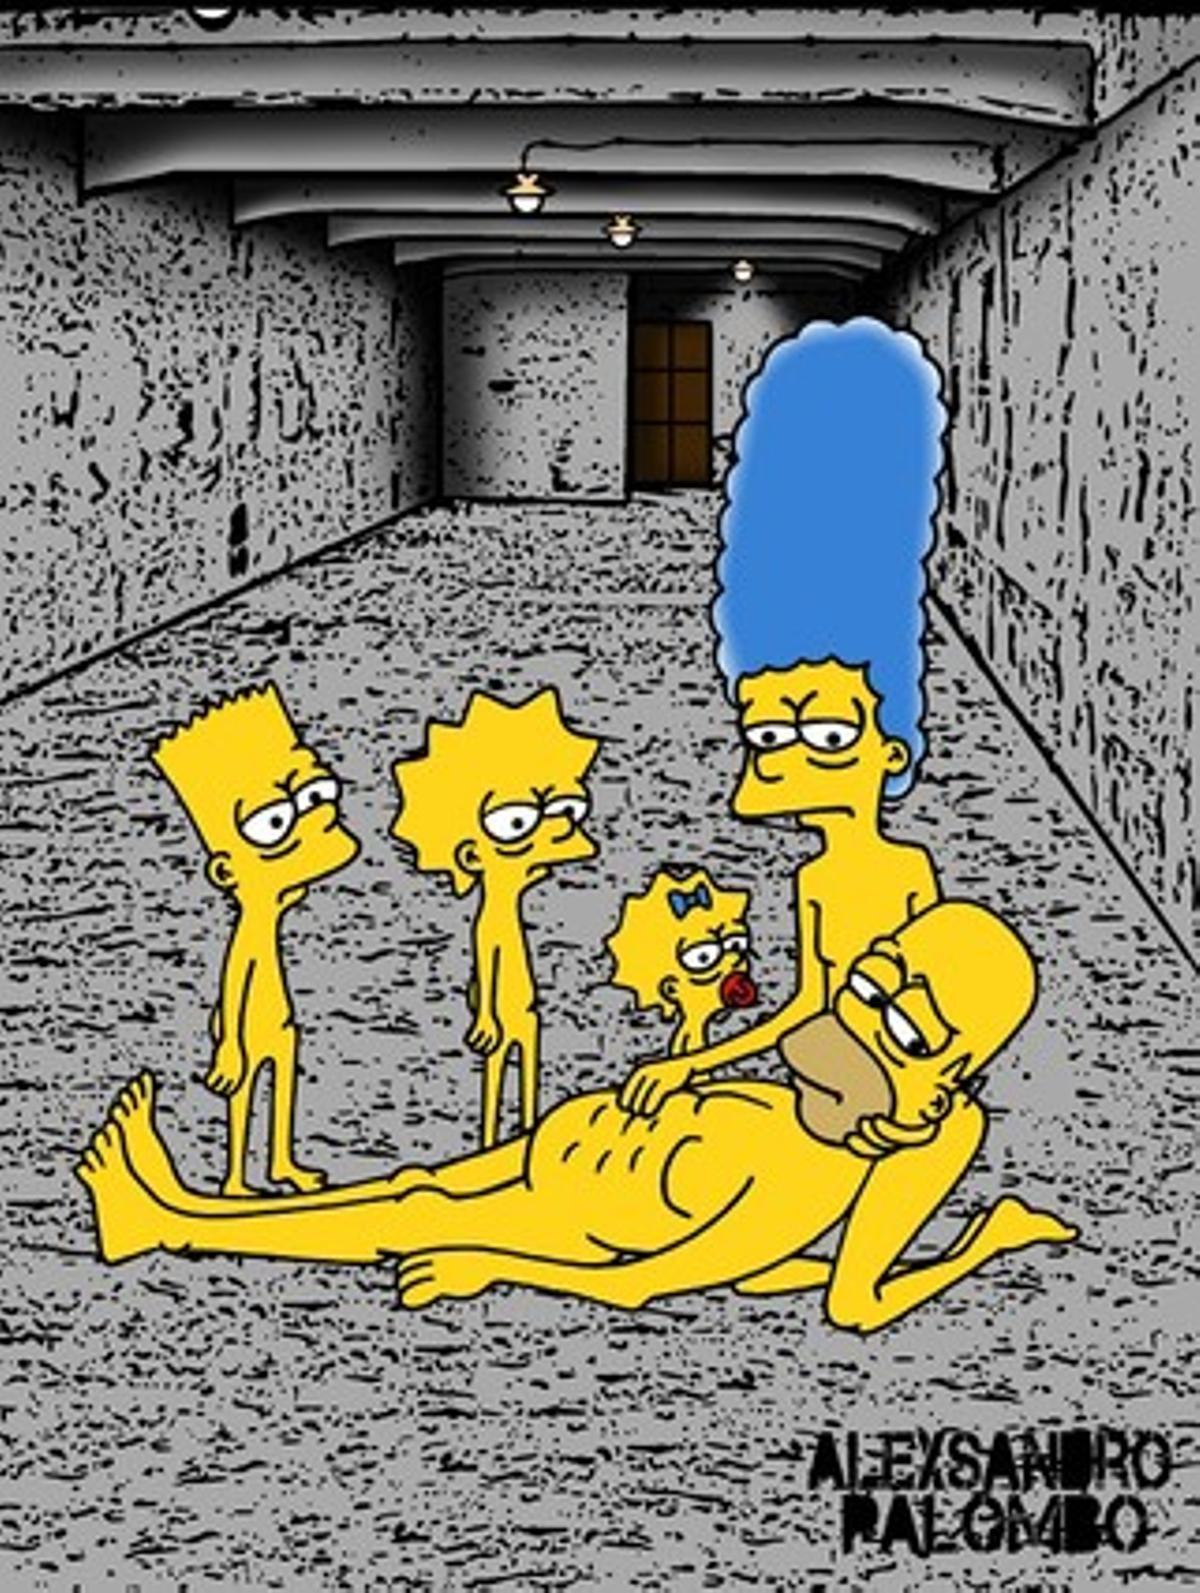 Els Simpson pateixen al camp d’extermini nazi.